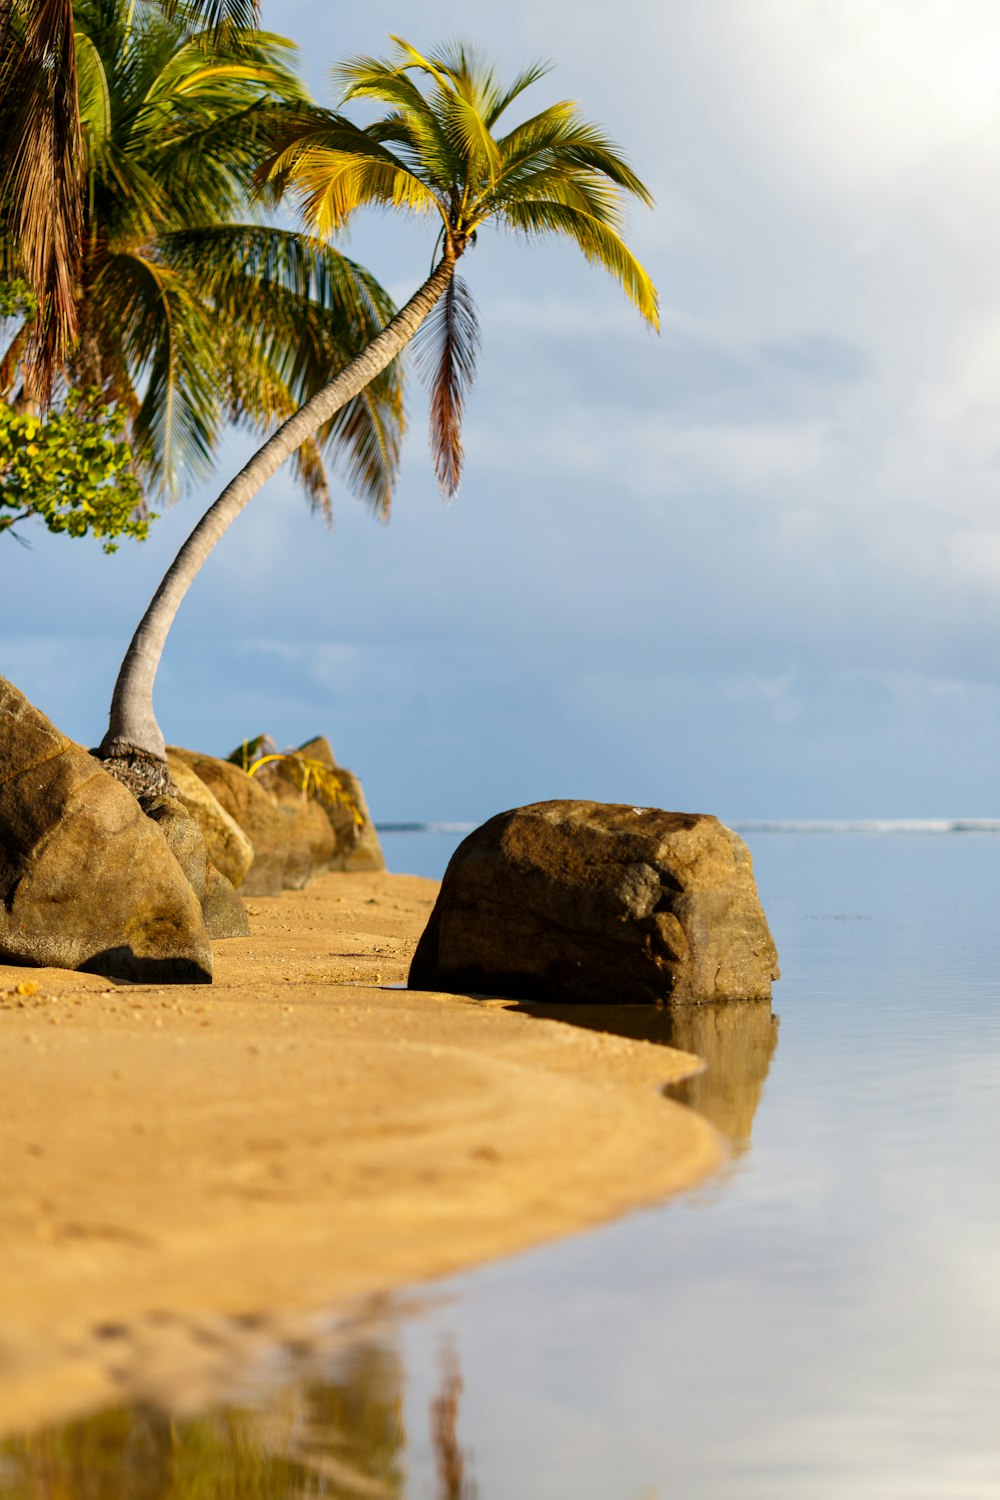 Eine Palme an einem Strand mit Felsen und Wasser